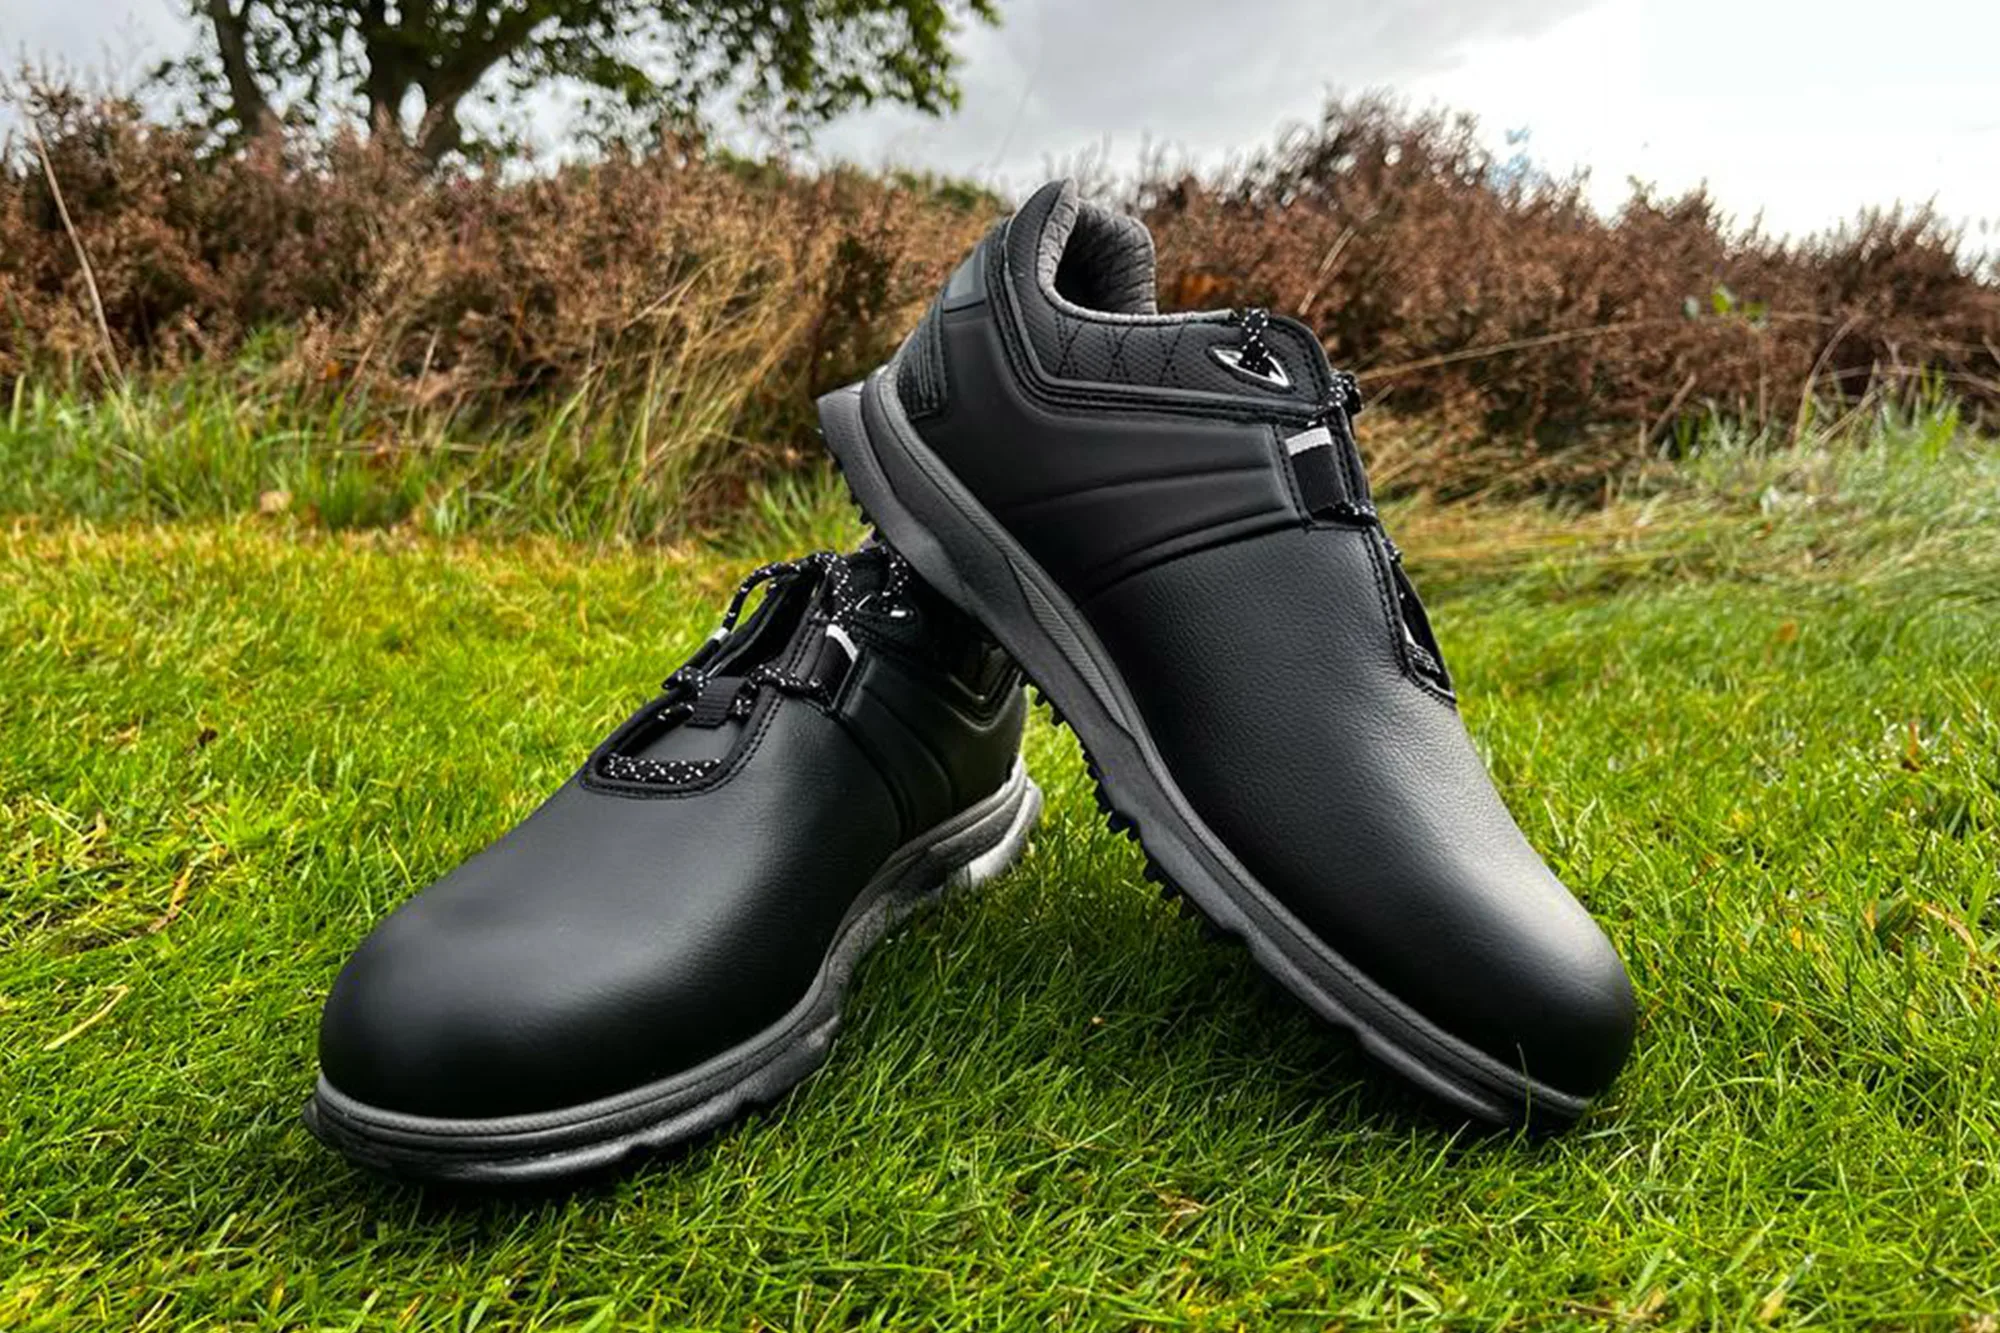 FootJoy Pro SL Carbon golf shoes review